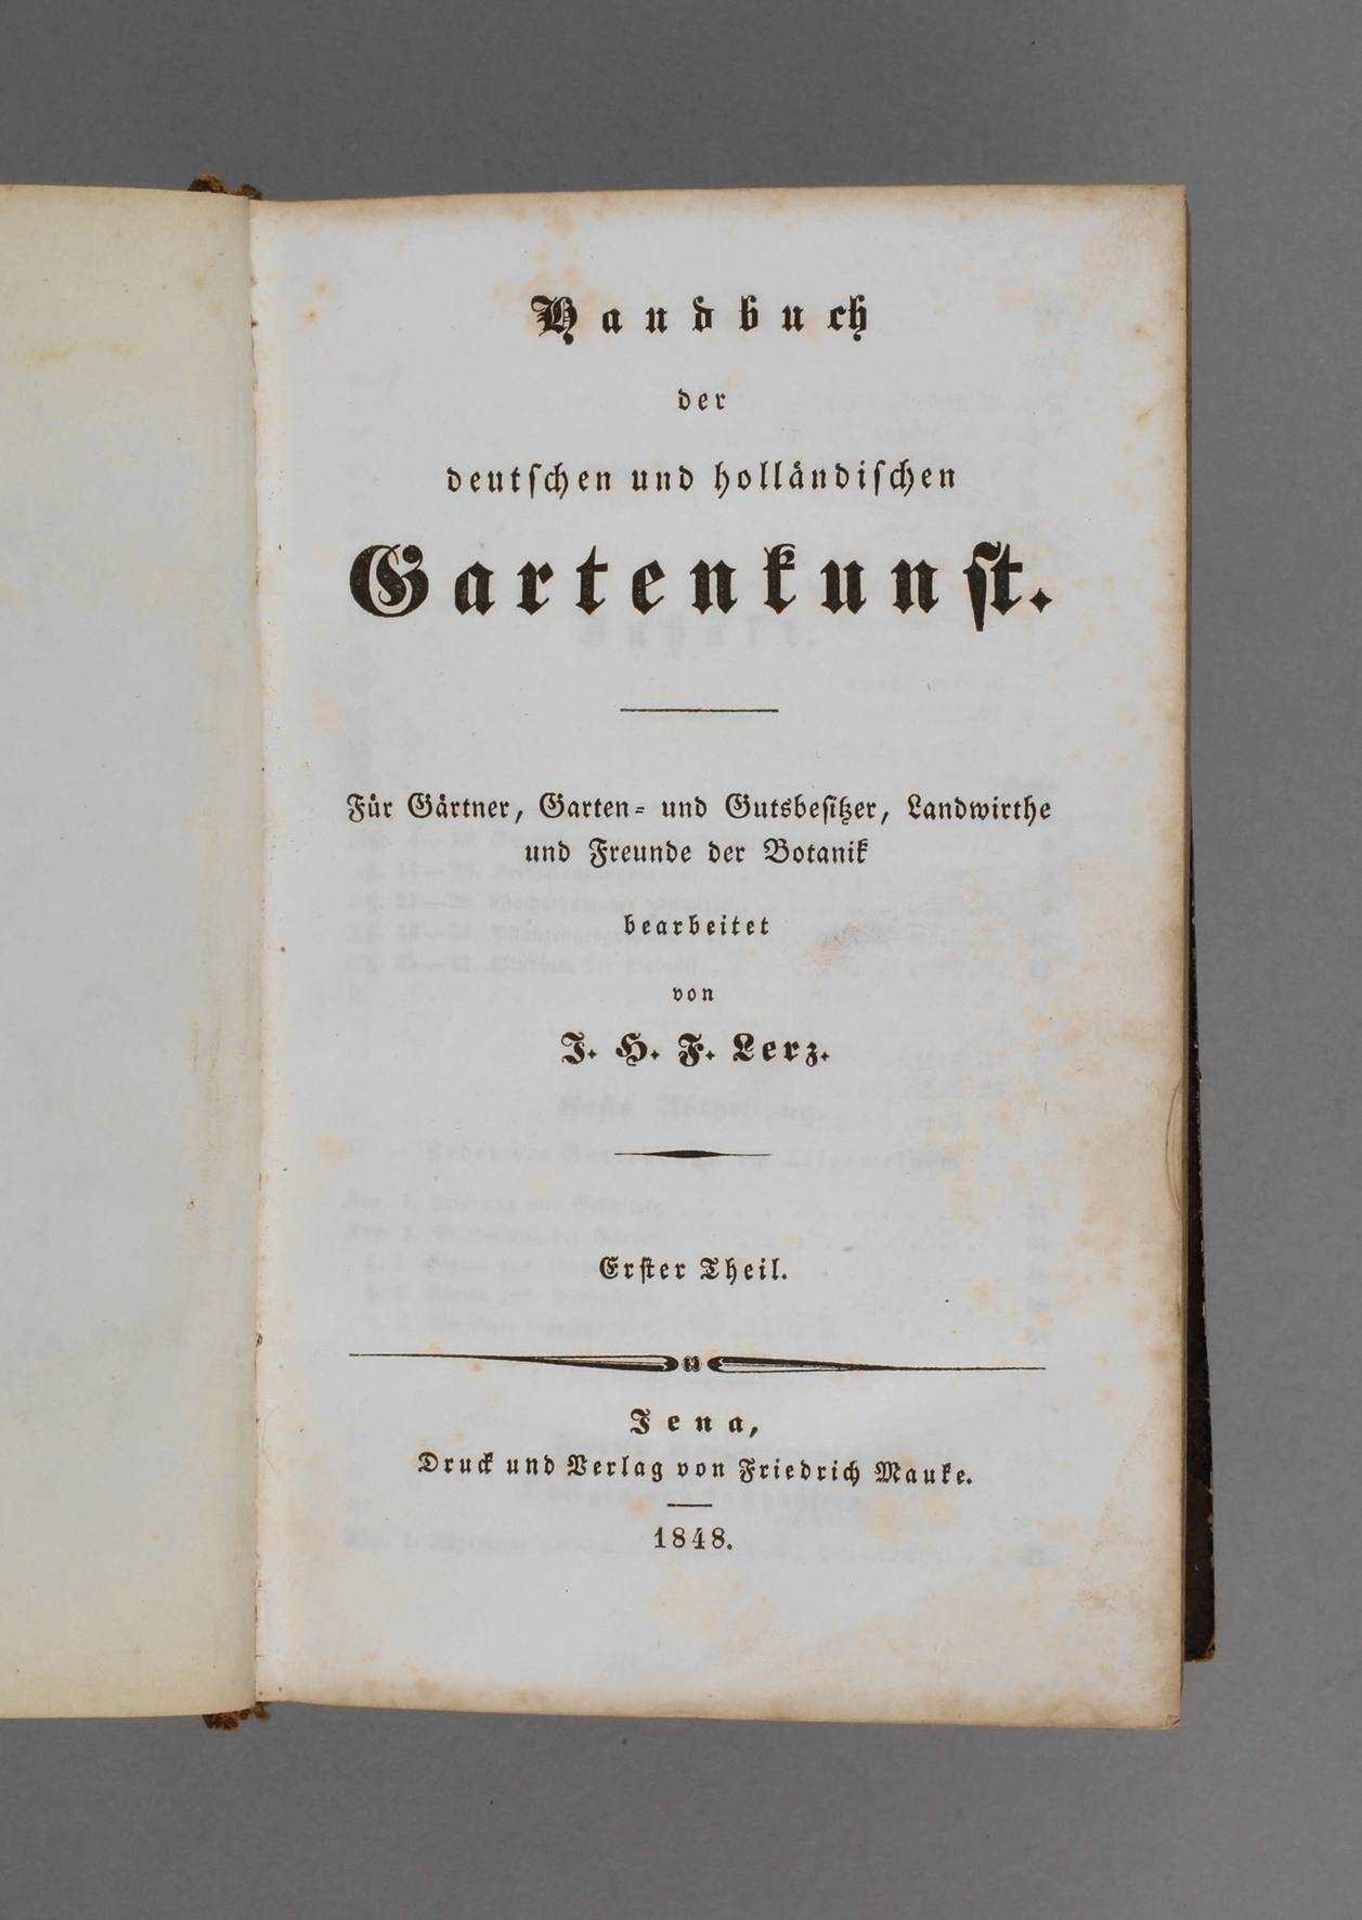 J. H. F. Lerz, Handbuchder deutschen und holländischen Gartenkunst, für Gärtner, Garten- und